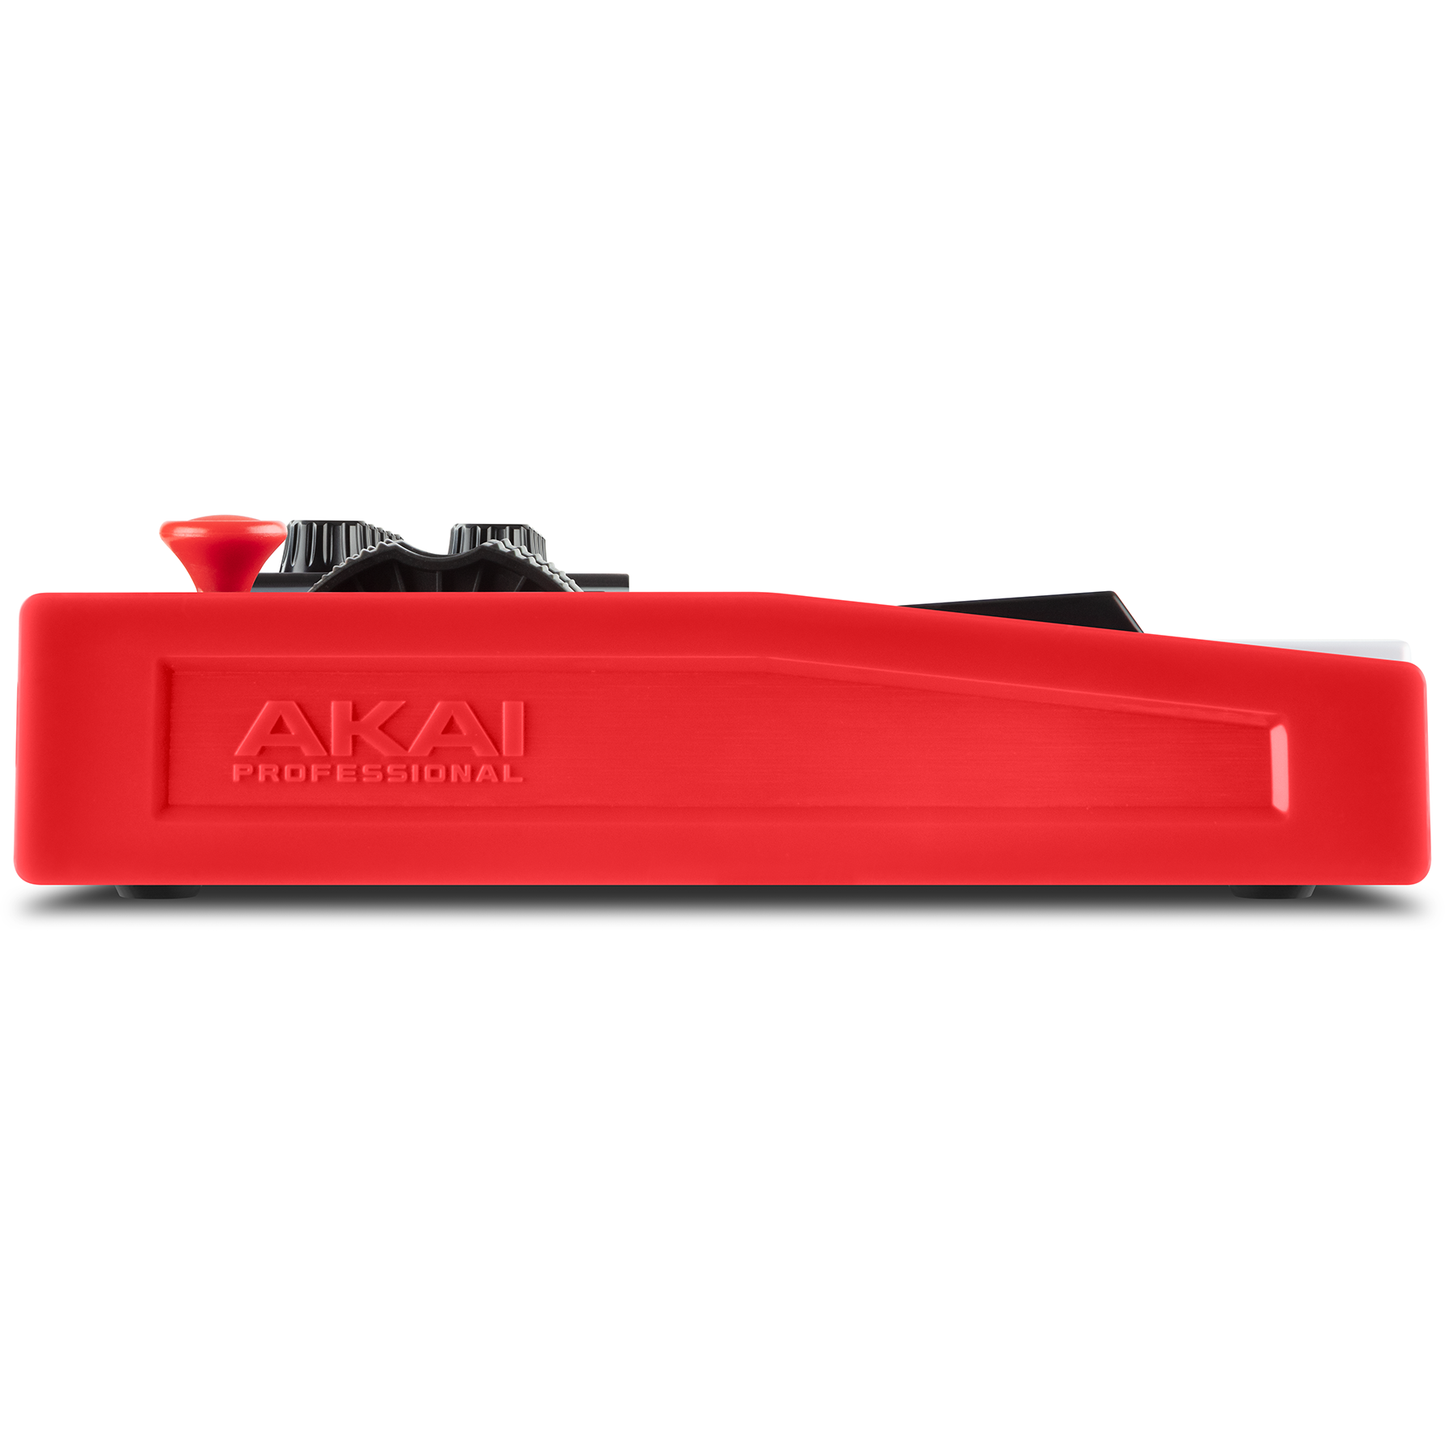 Akai Professional MPK Mini Plus 37-Key Mini Keyboard